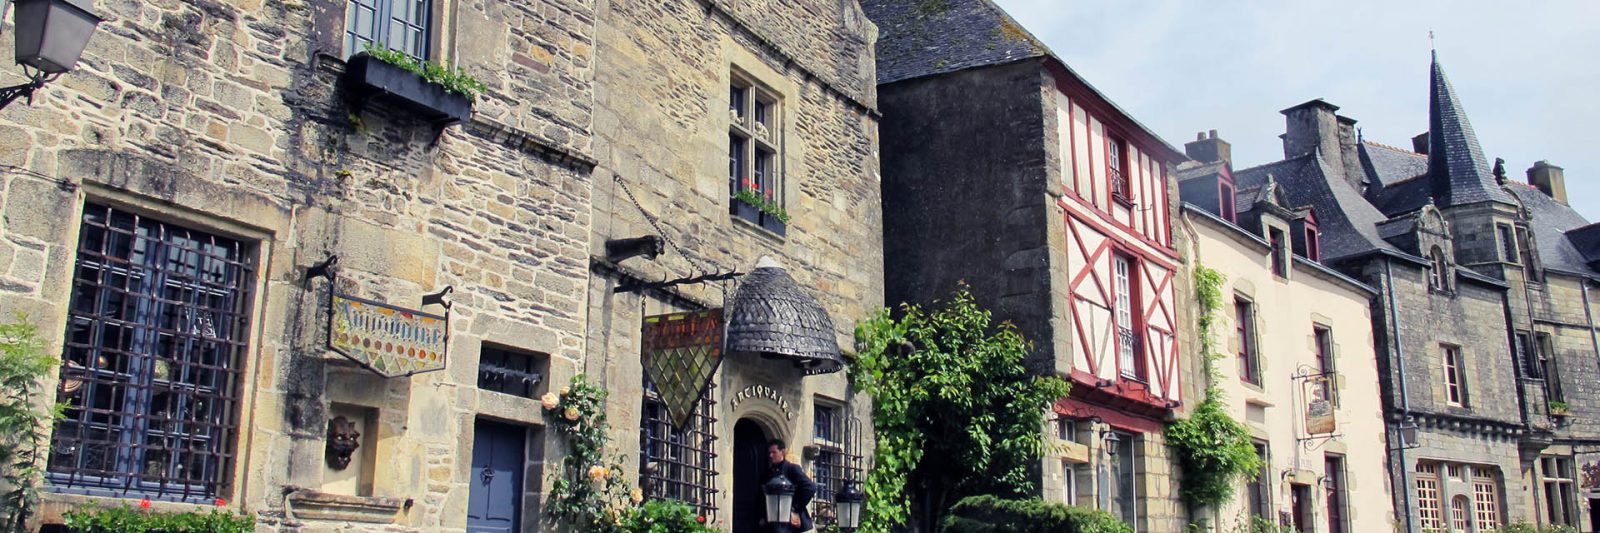 Rochefort en terre village préféré des français en 2016 - Cité médiévale - visite incontournable